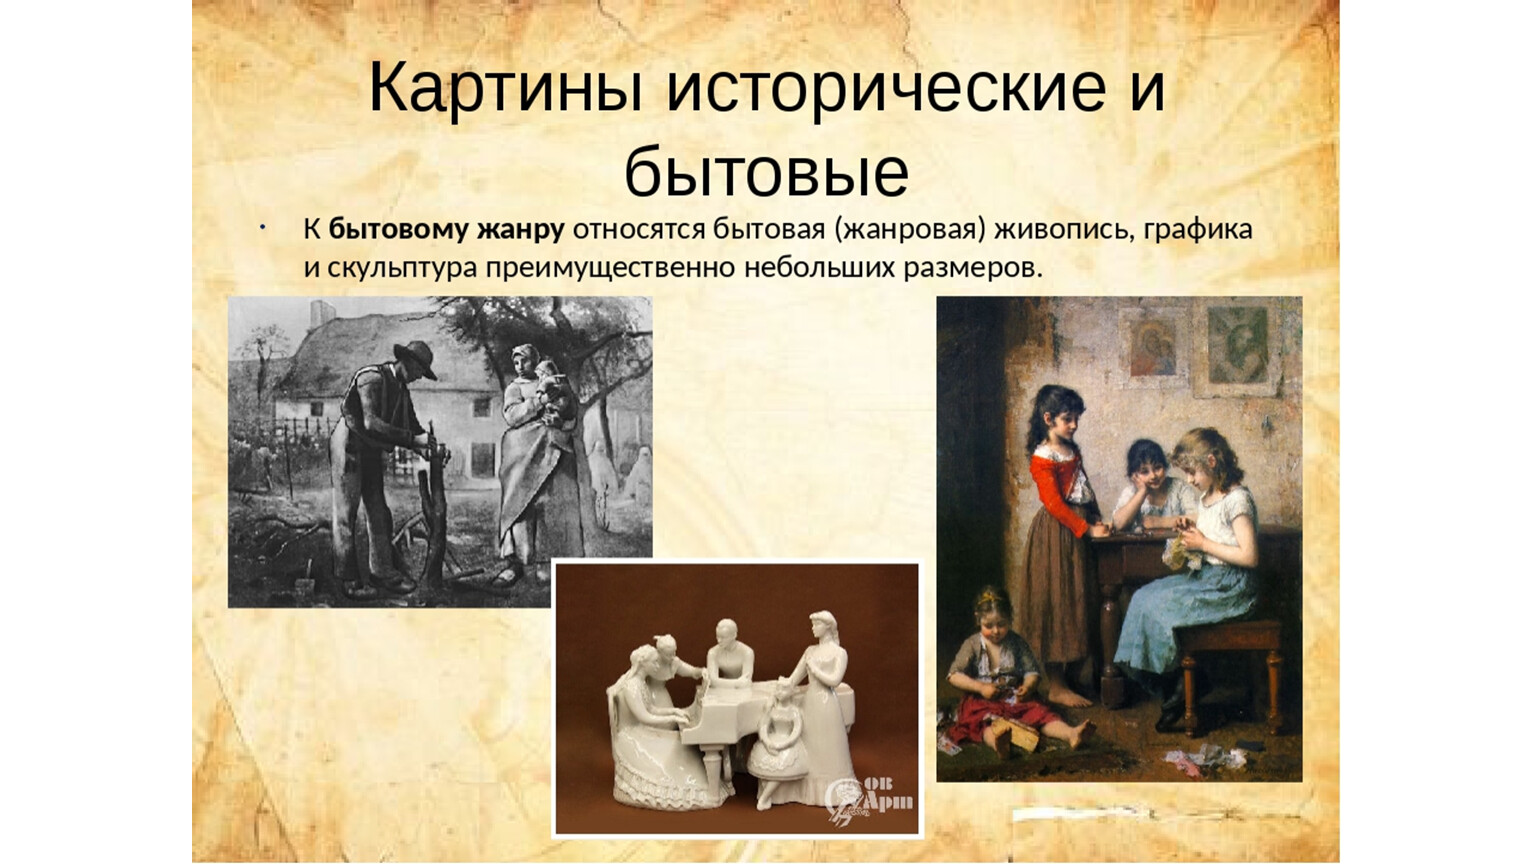 Картины исторические и бытовые